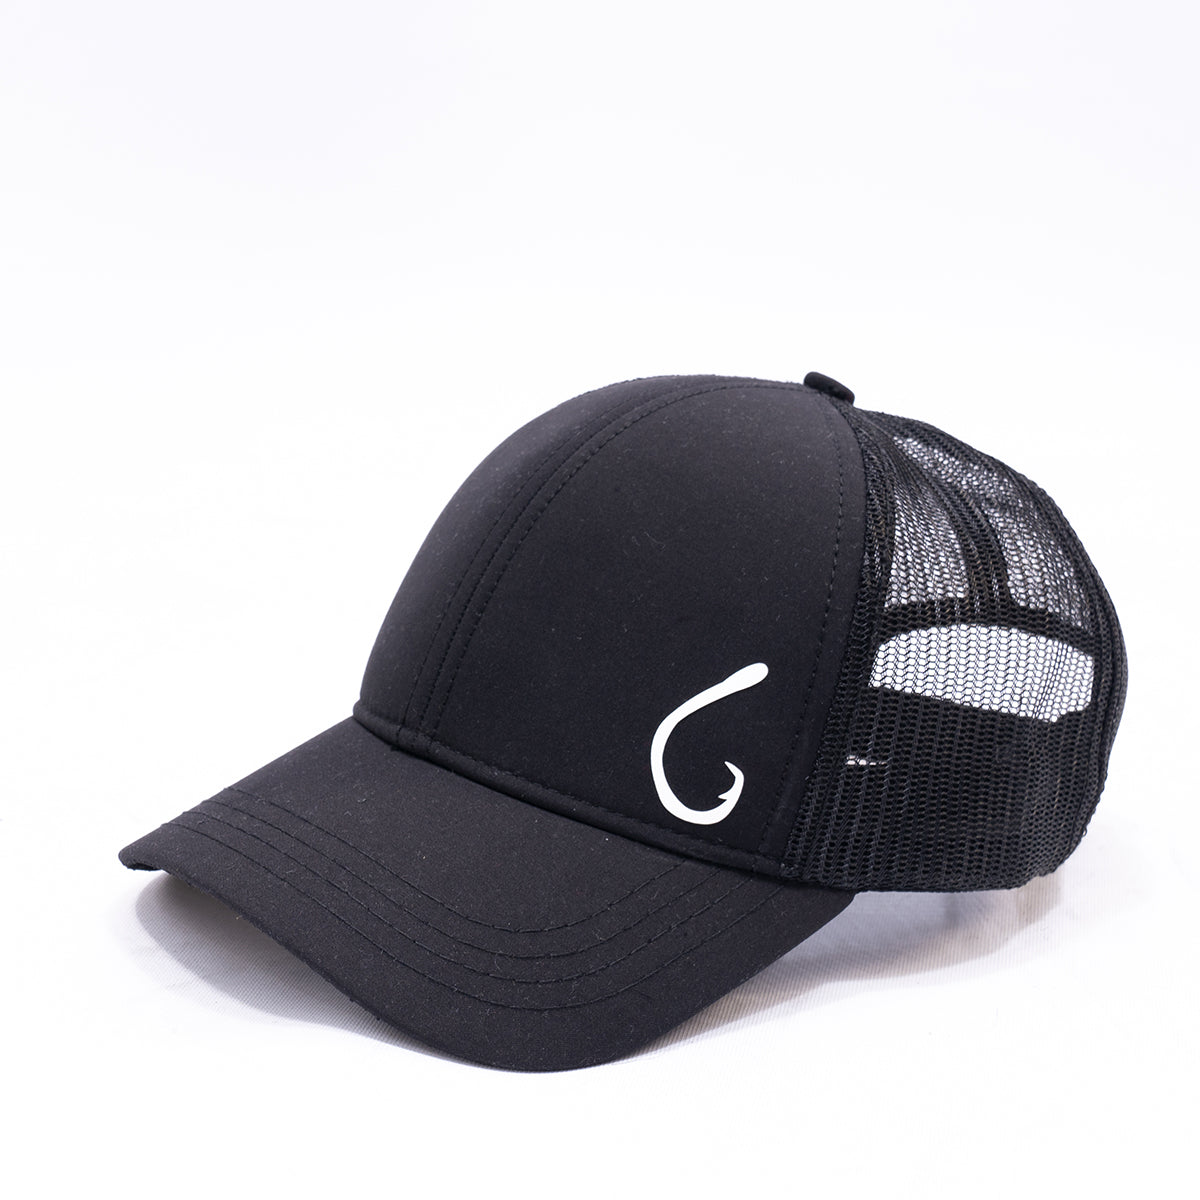 North Cap Unisex Black Colored Hat